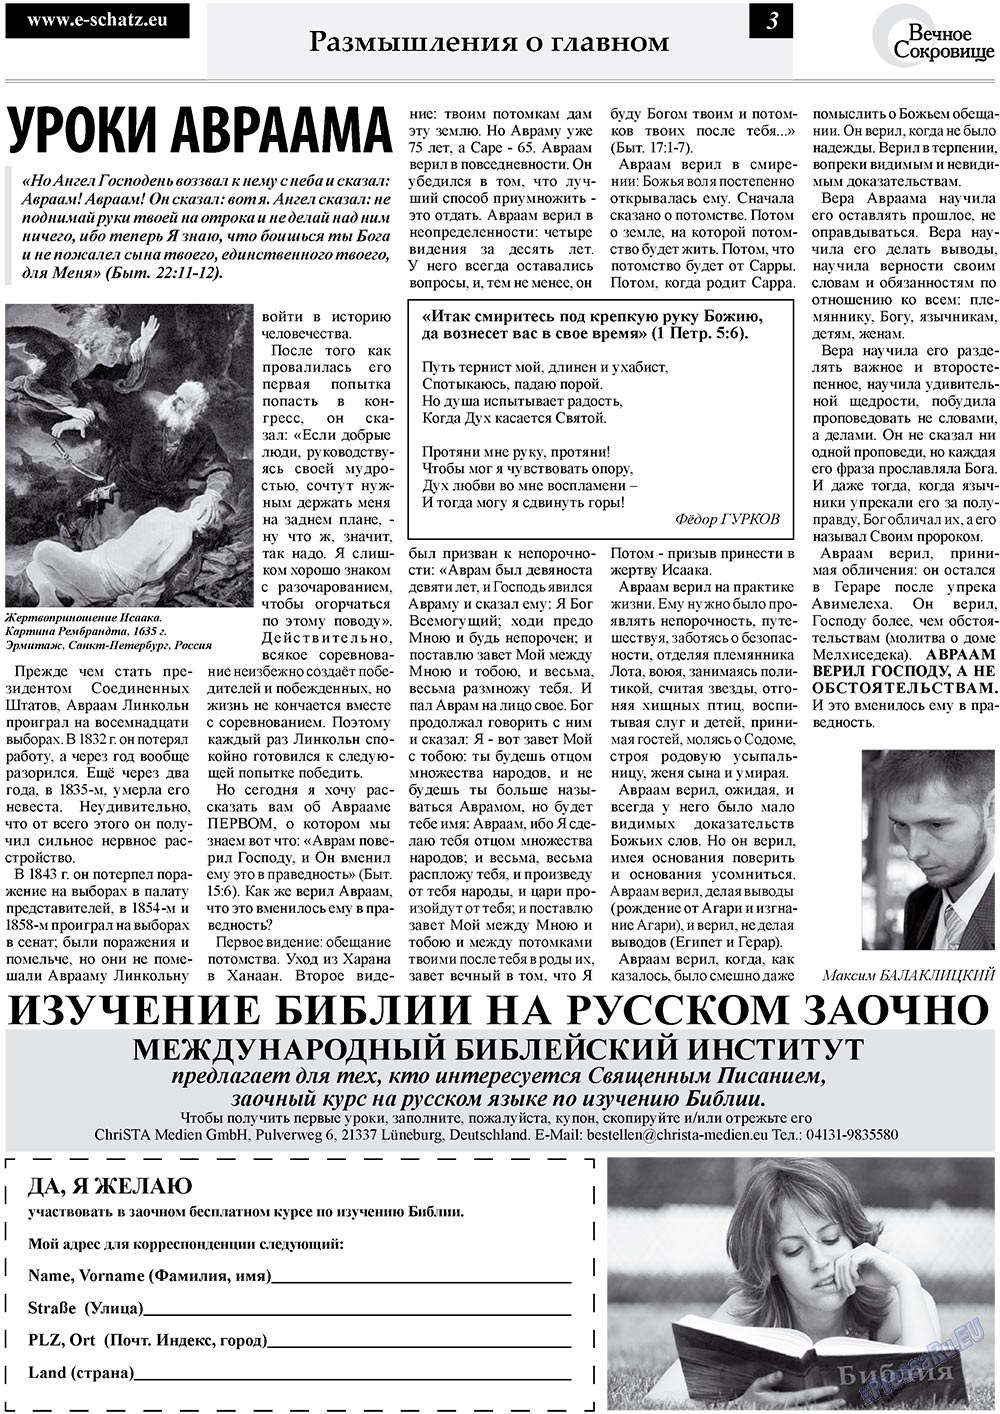 Вечное сокровище, газета. 2010 №3 стр.3